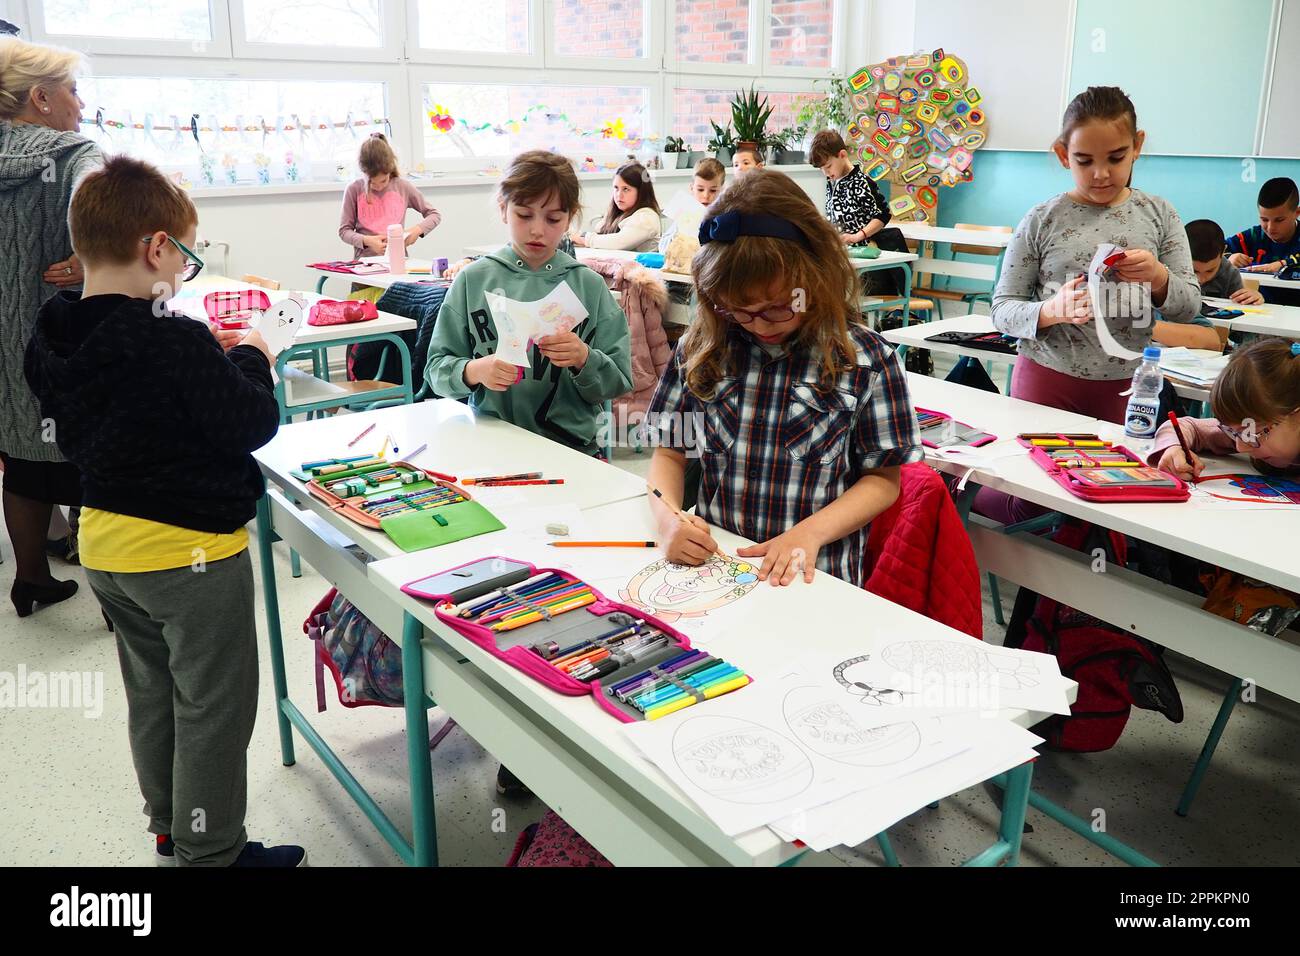 Les enfants de 9-10 ans, garçons et filles, font de l'artisanat maison à la leçon. Normes modernes d'éducation, développement des capacités créatives et de la motricité fine à l'école 9 avril 2022 Serbie Srem Banque D'Images